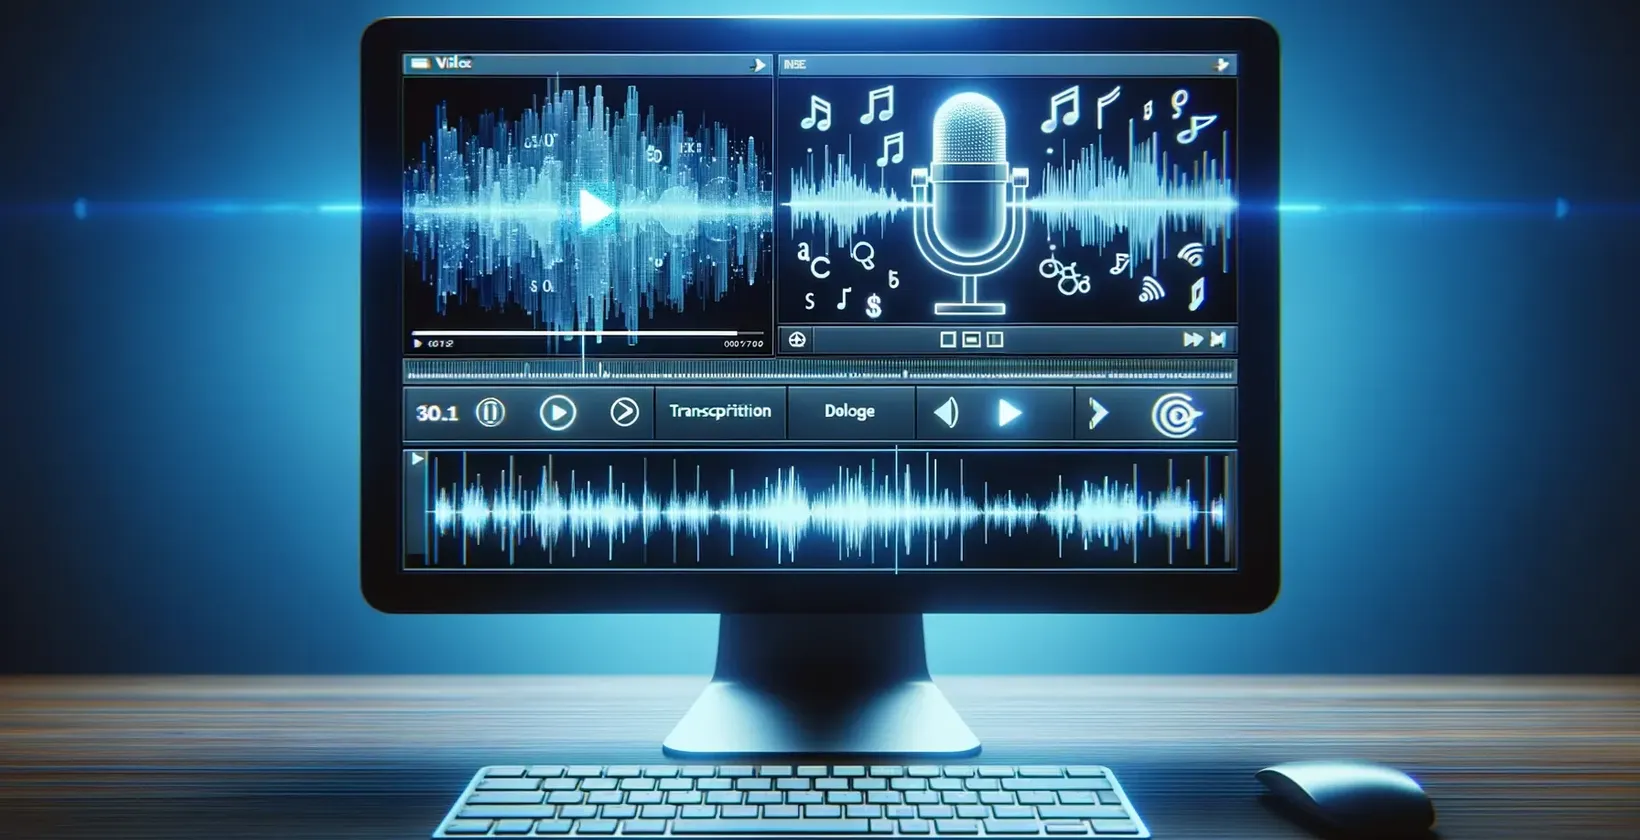 Экран компьютера, на котором отображаются ноты, и микрофон, используемый для транскрипции видео в текст.